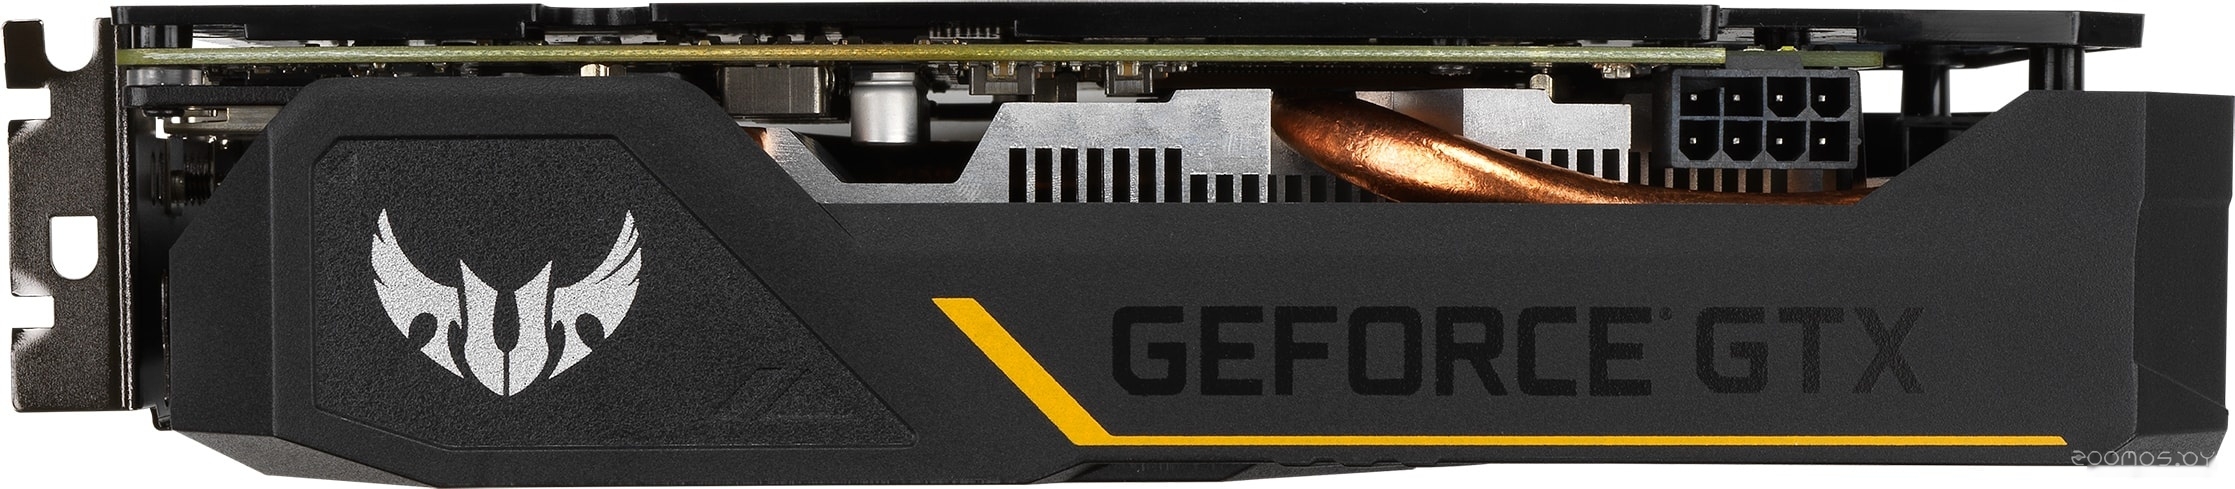  Asus TUF Gaming GeForce GTX 1660 Ti Evo 6GB GDDR6     